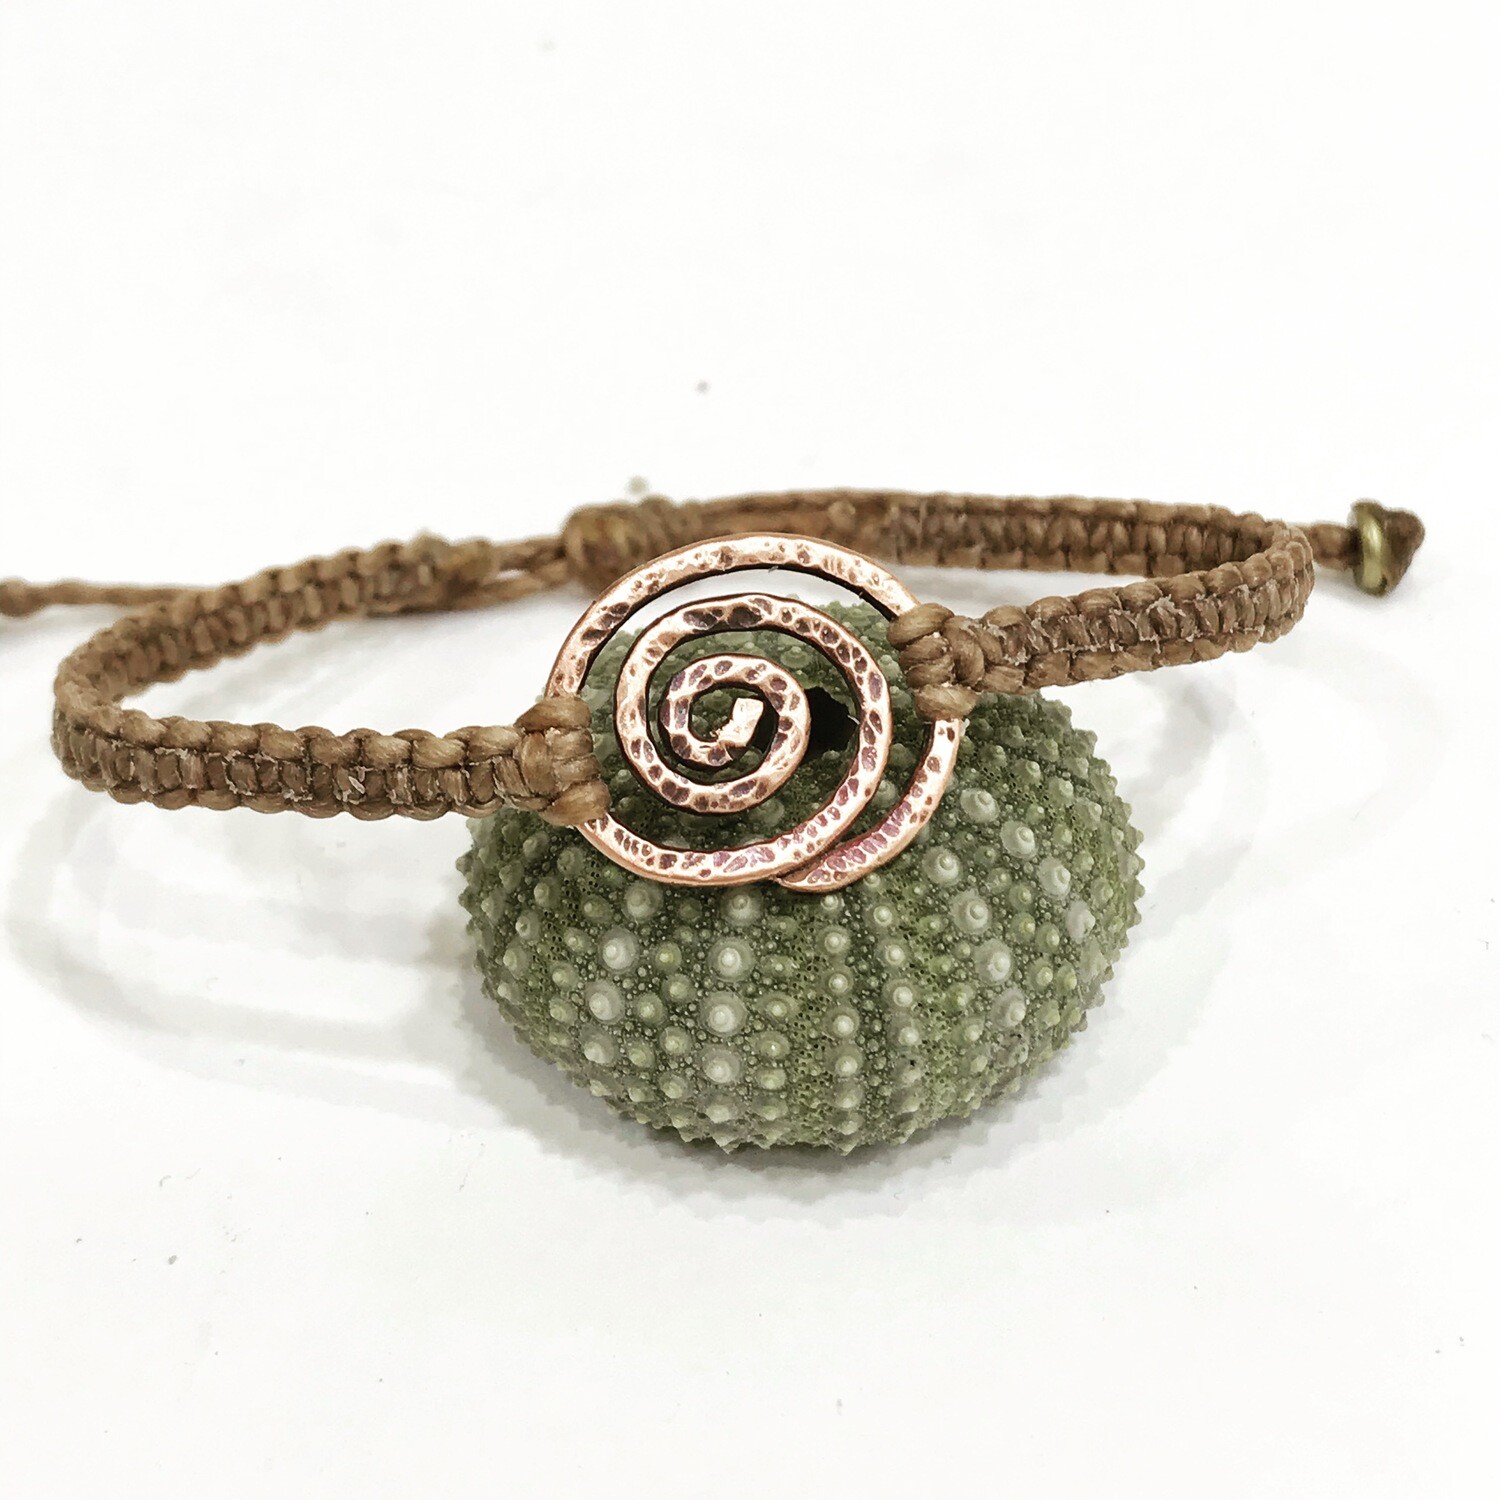 Spiral hammered copper or sterling silver macrame bracelet